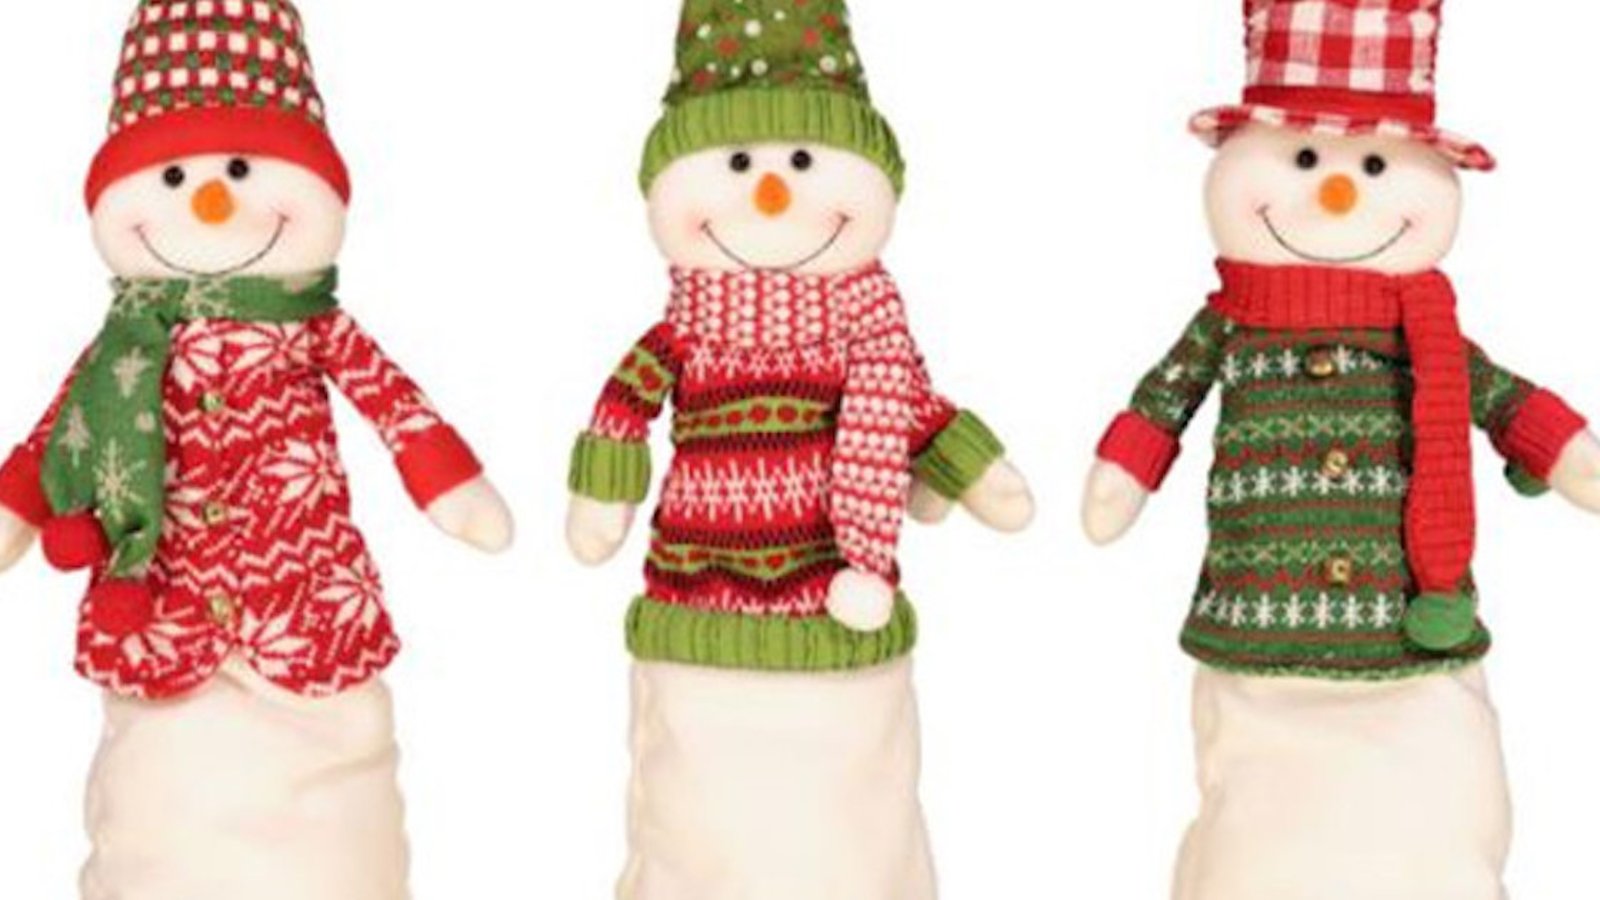 Rappel d’ensembles de 3 bonshommes de neige décoratifs vendus chez Costco à cause de risques de blessures